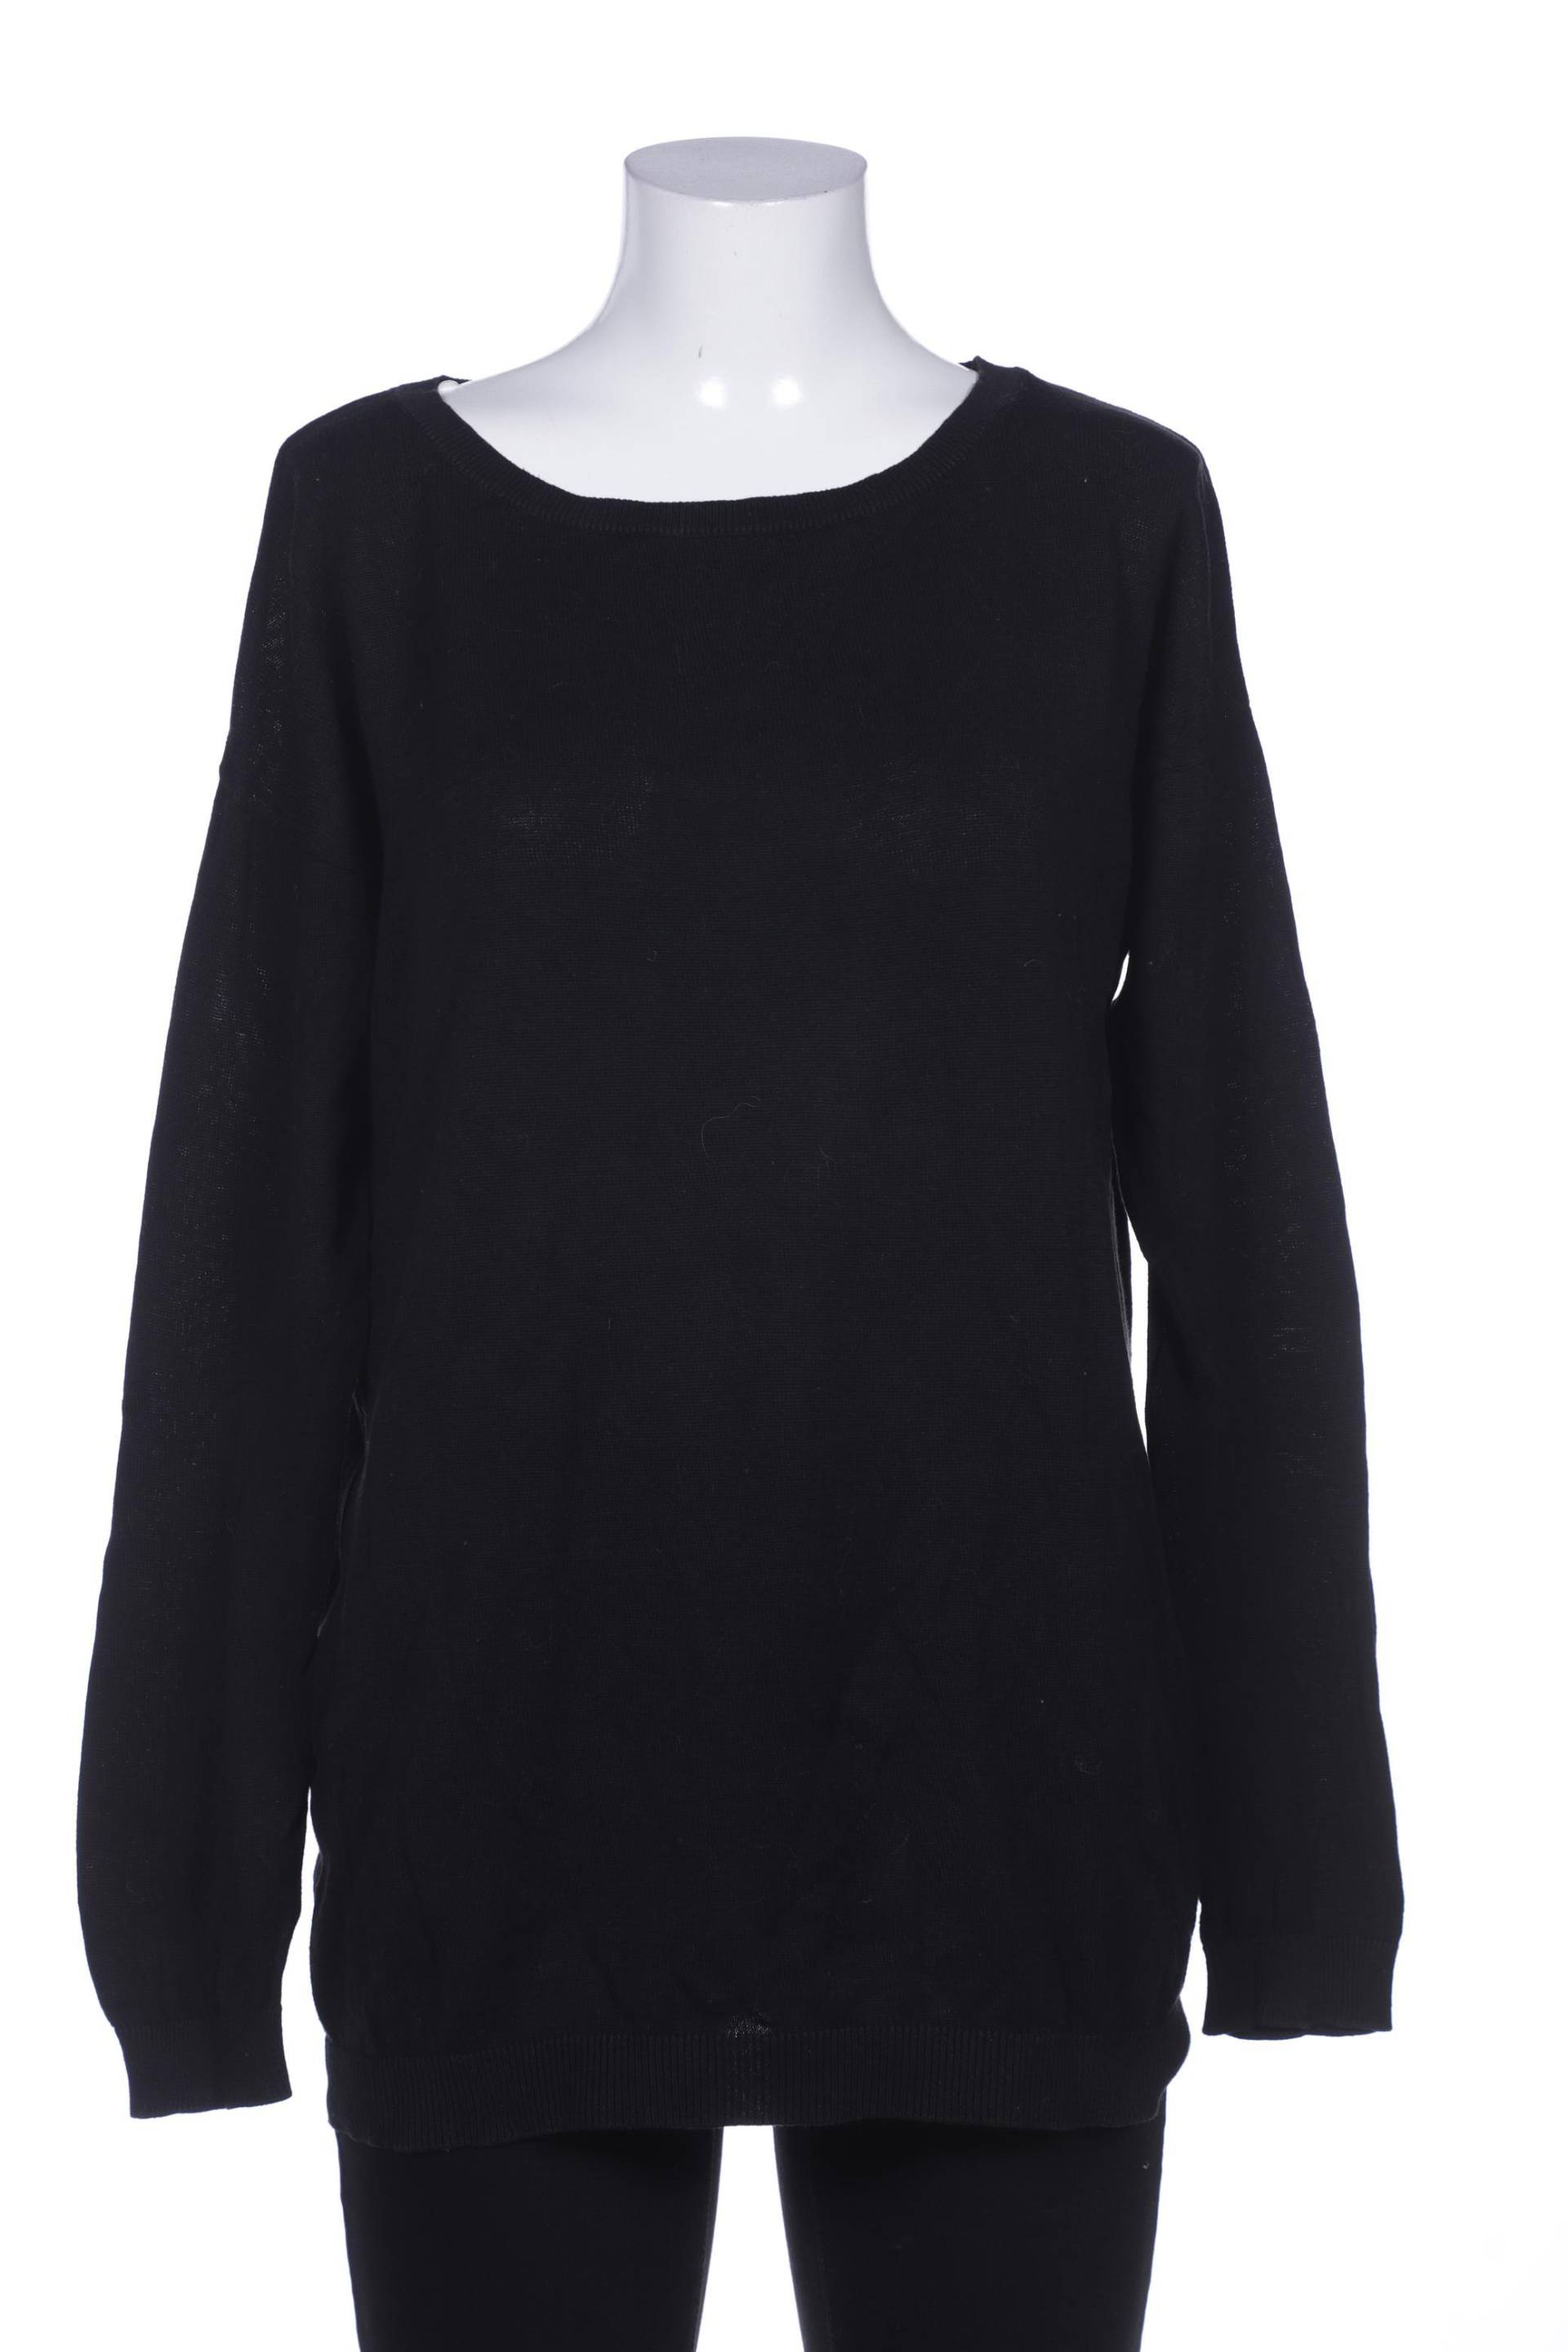 H&M Damen Pullover, schwarz von H&M